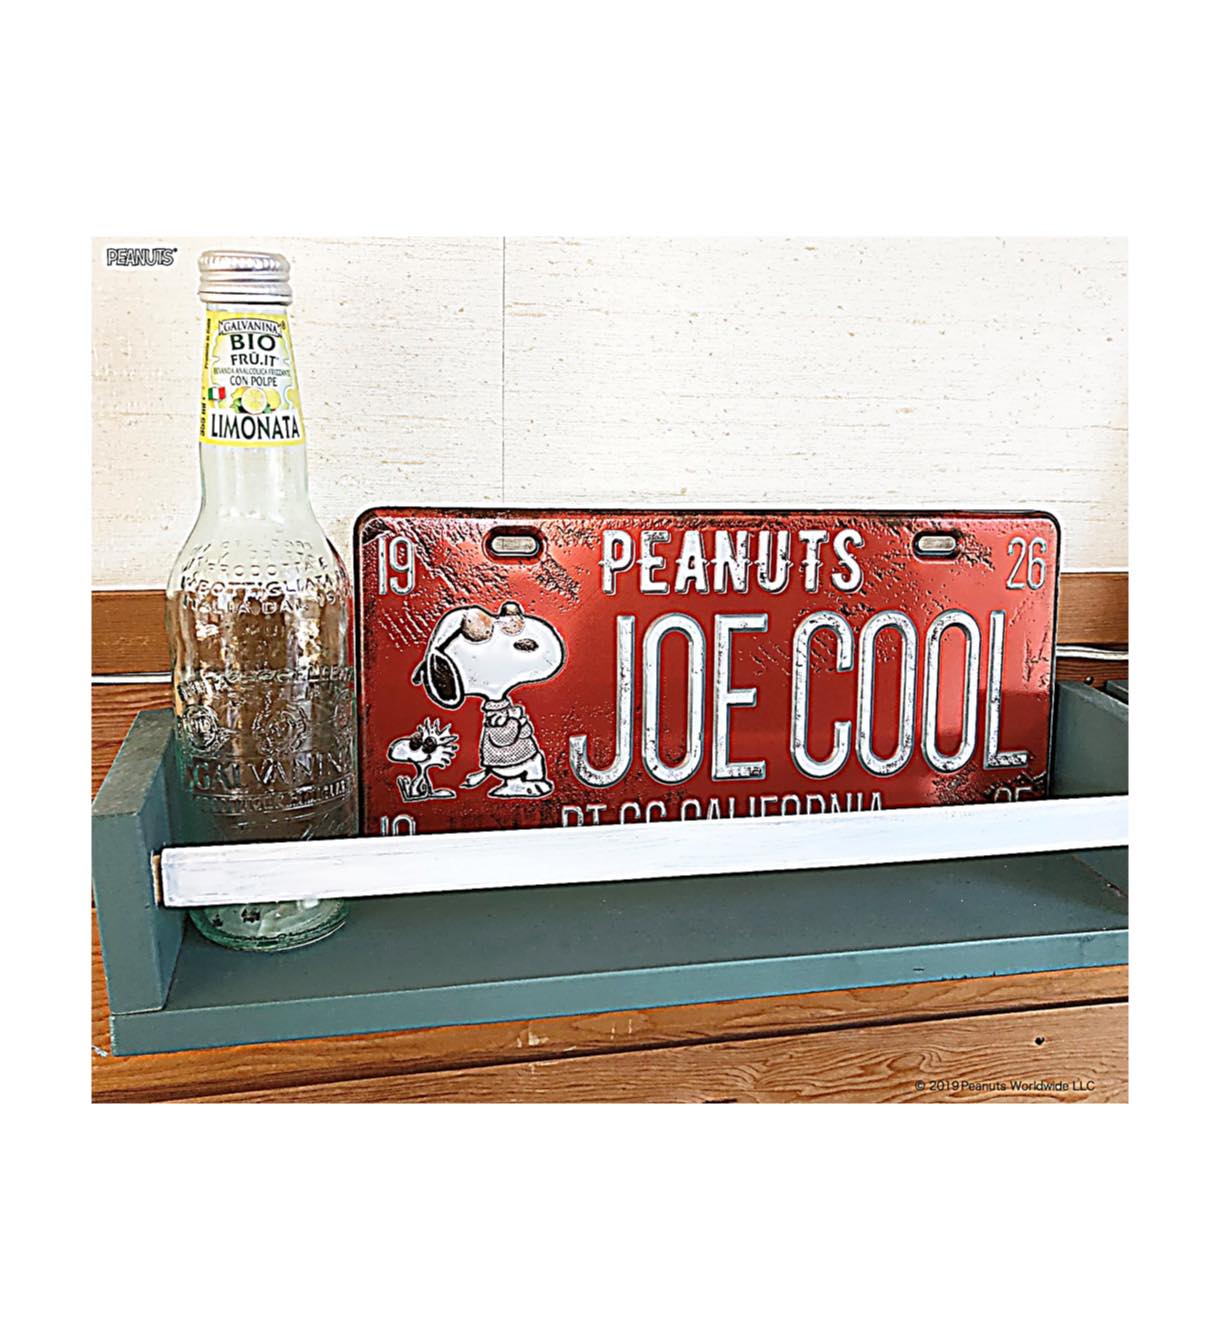 Peanuts Snoopy スヌーピー 壁に貼って剥がせる ナンバープレートウォールステッカー Joe Cool Hopely